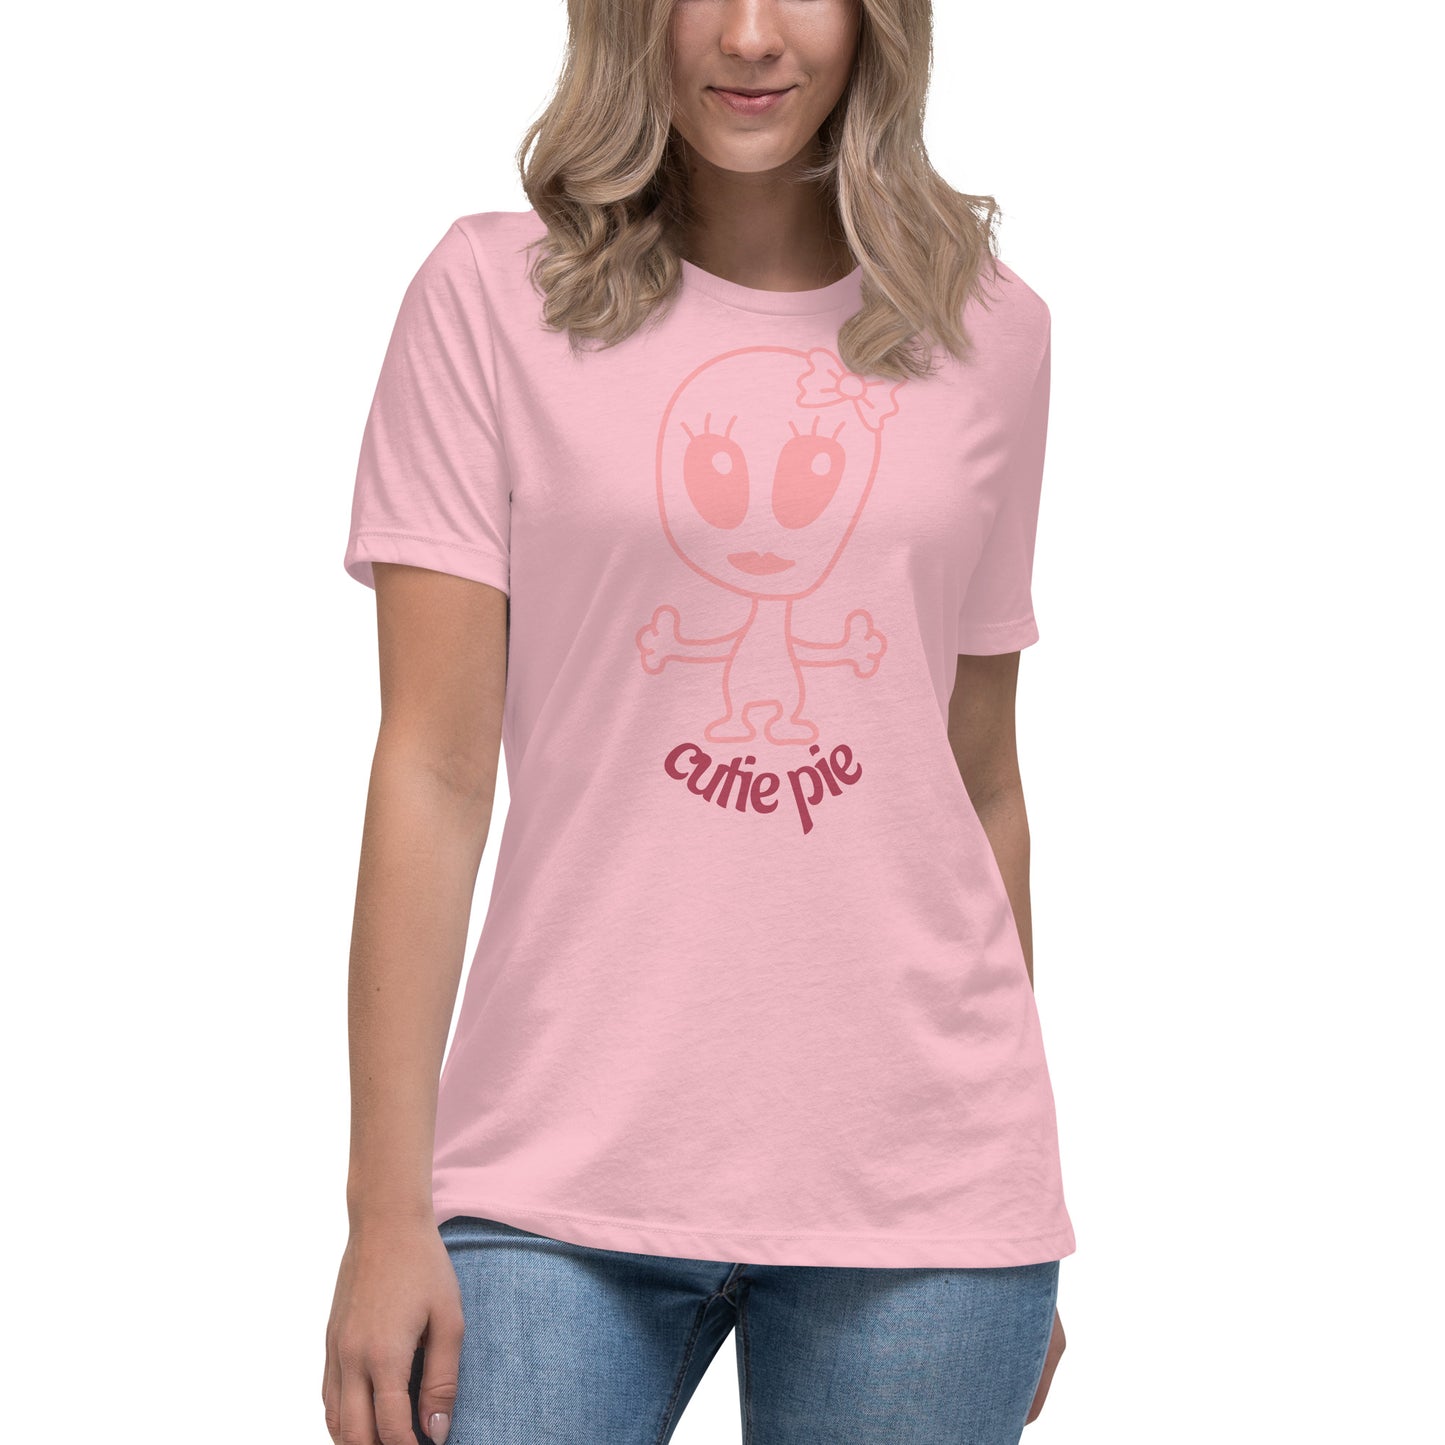 Cutie Pie Women's Relaxed T-Shirt